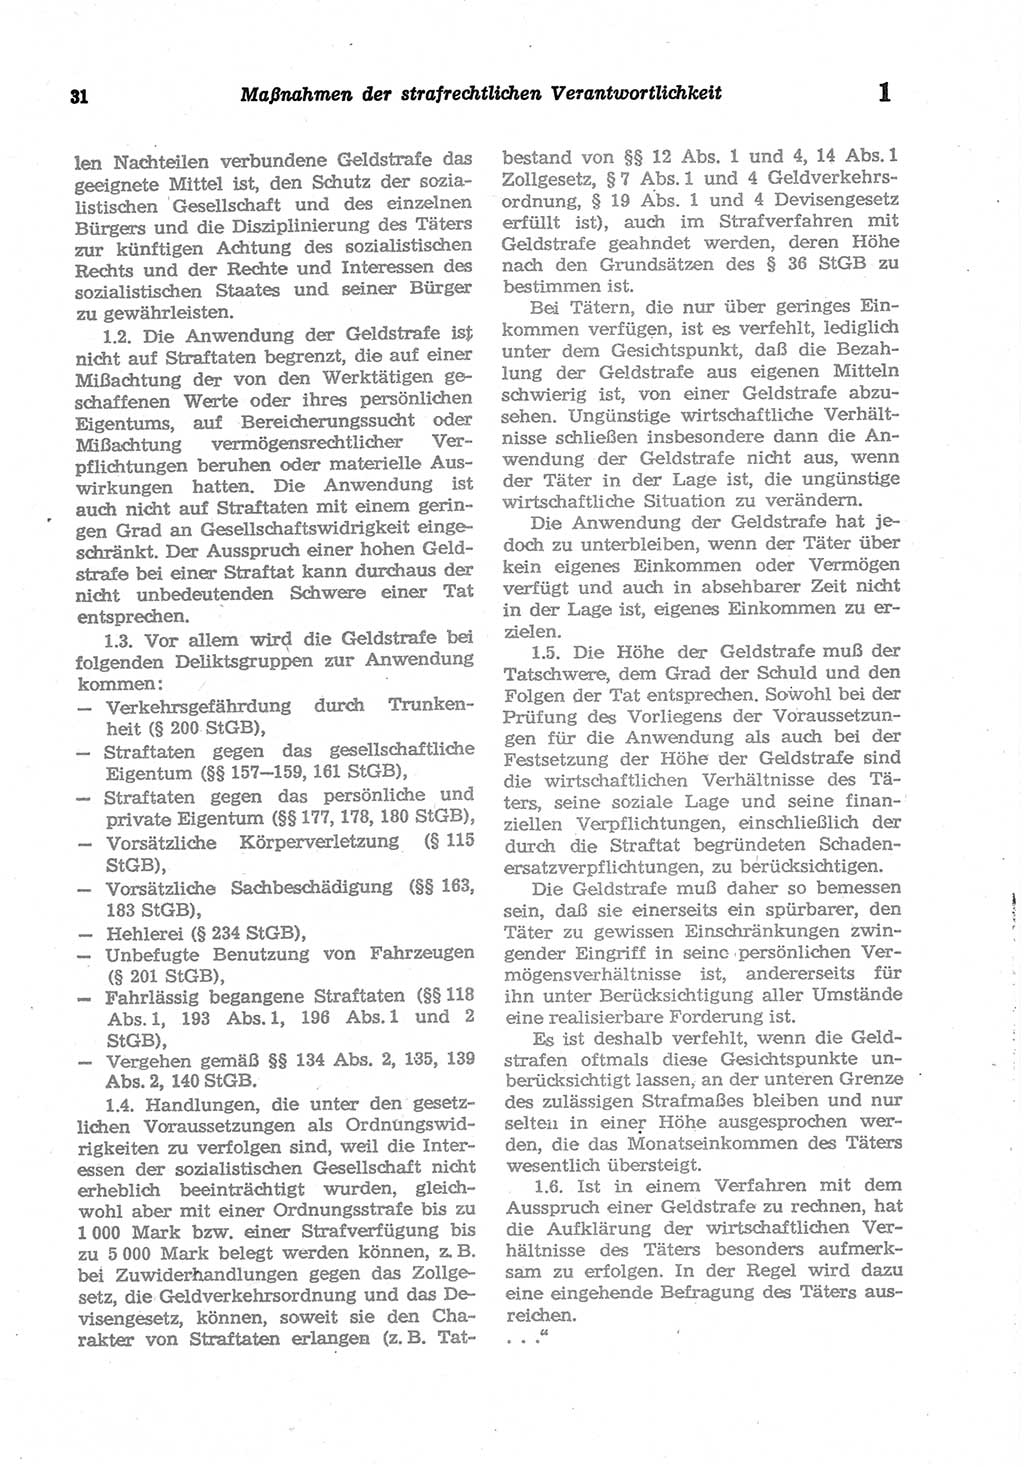 Strafgesetzbuch (StGB) der Deutschen Demokratischen Republik (DDR) und angrenzende Gesetze und Bestimmungen 1977, Seite 31 (StGB DDR Ges. Best. 1977, S. 31)